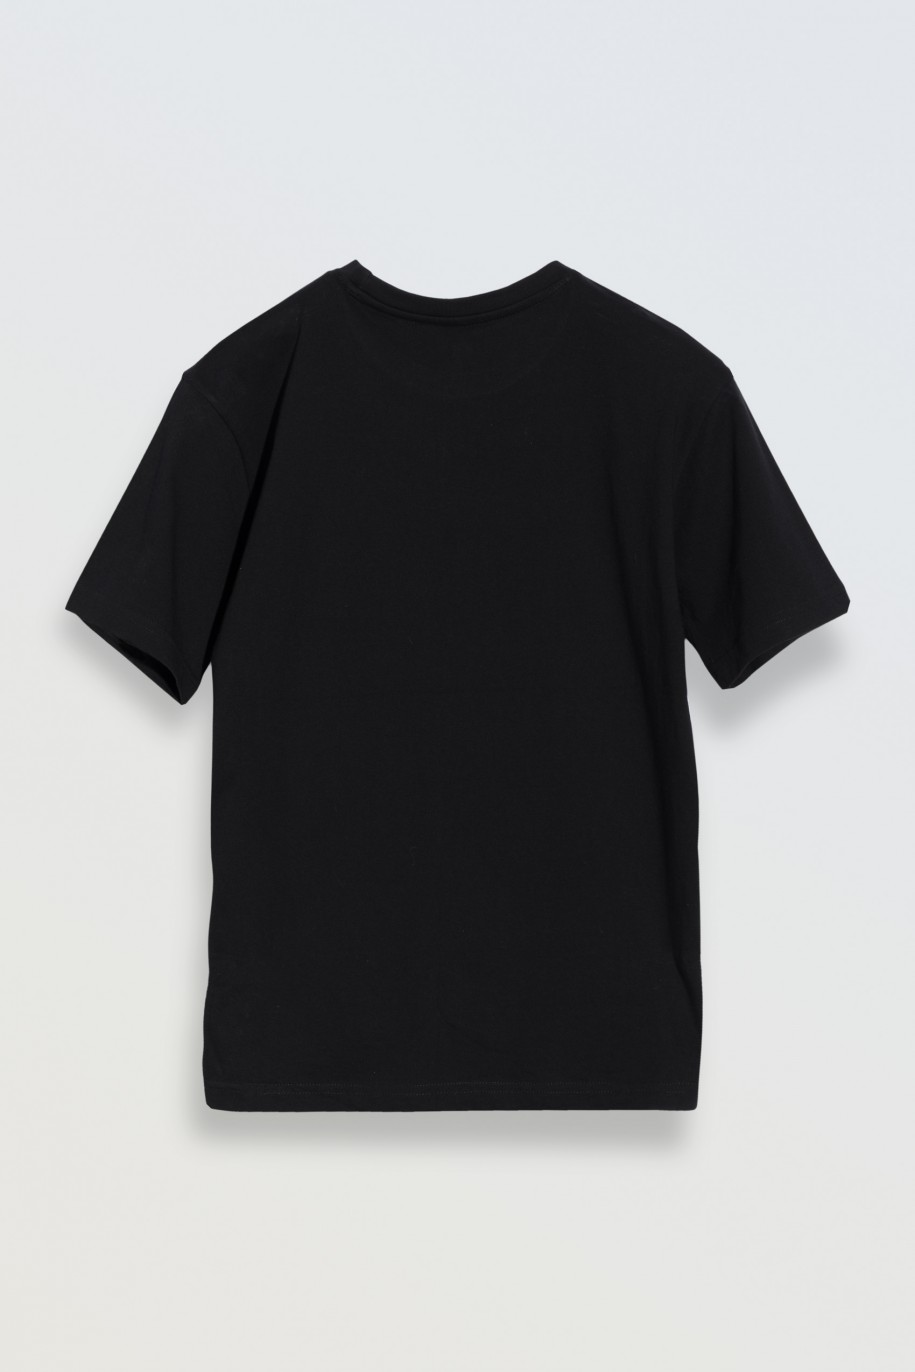 Czarny t-shirt z kontrastowym nadrukiem na wysokości piersi - 46853